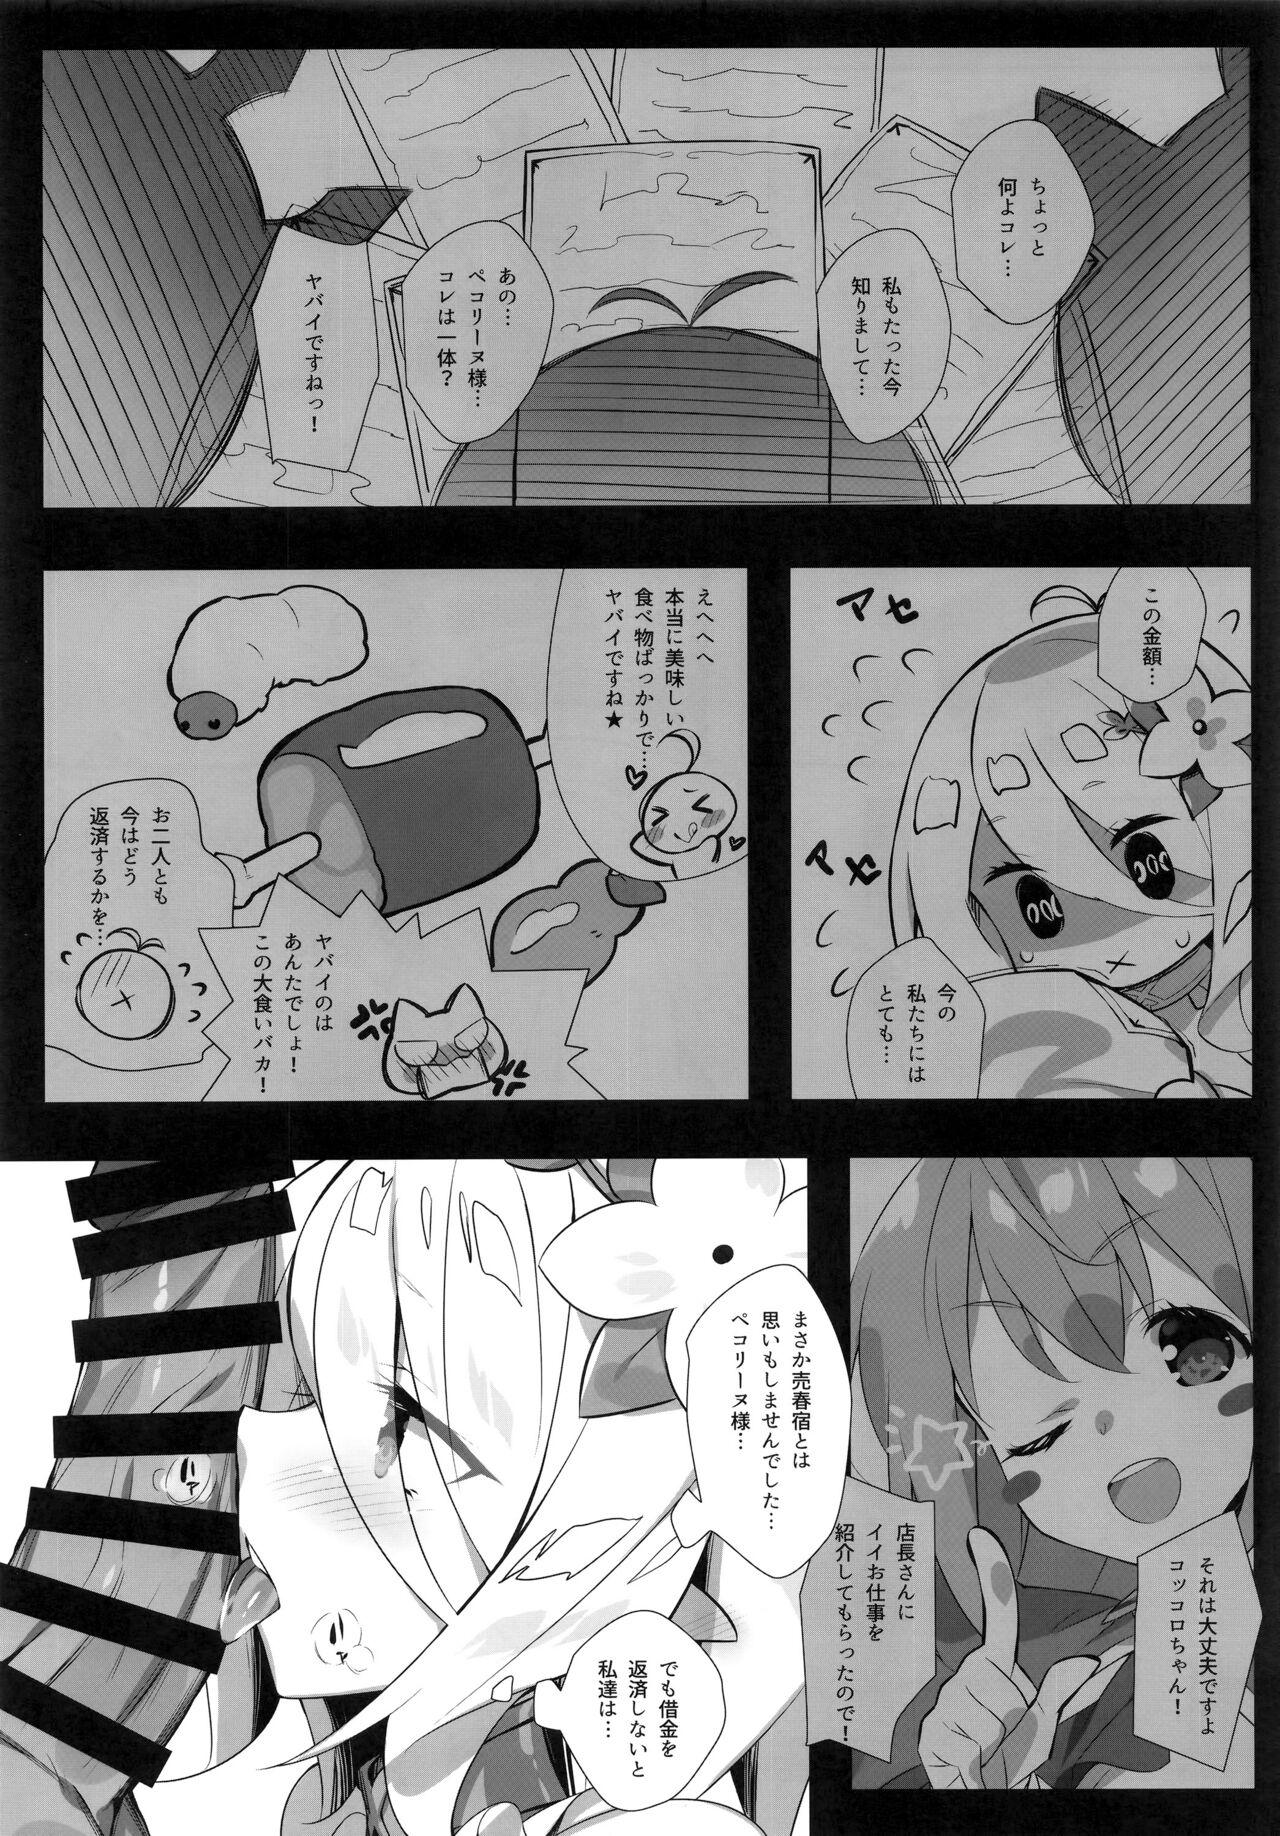 Mask Aruji-sama no Tame nara... - Princess connect Innocent - Page 4